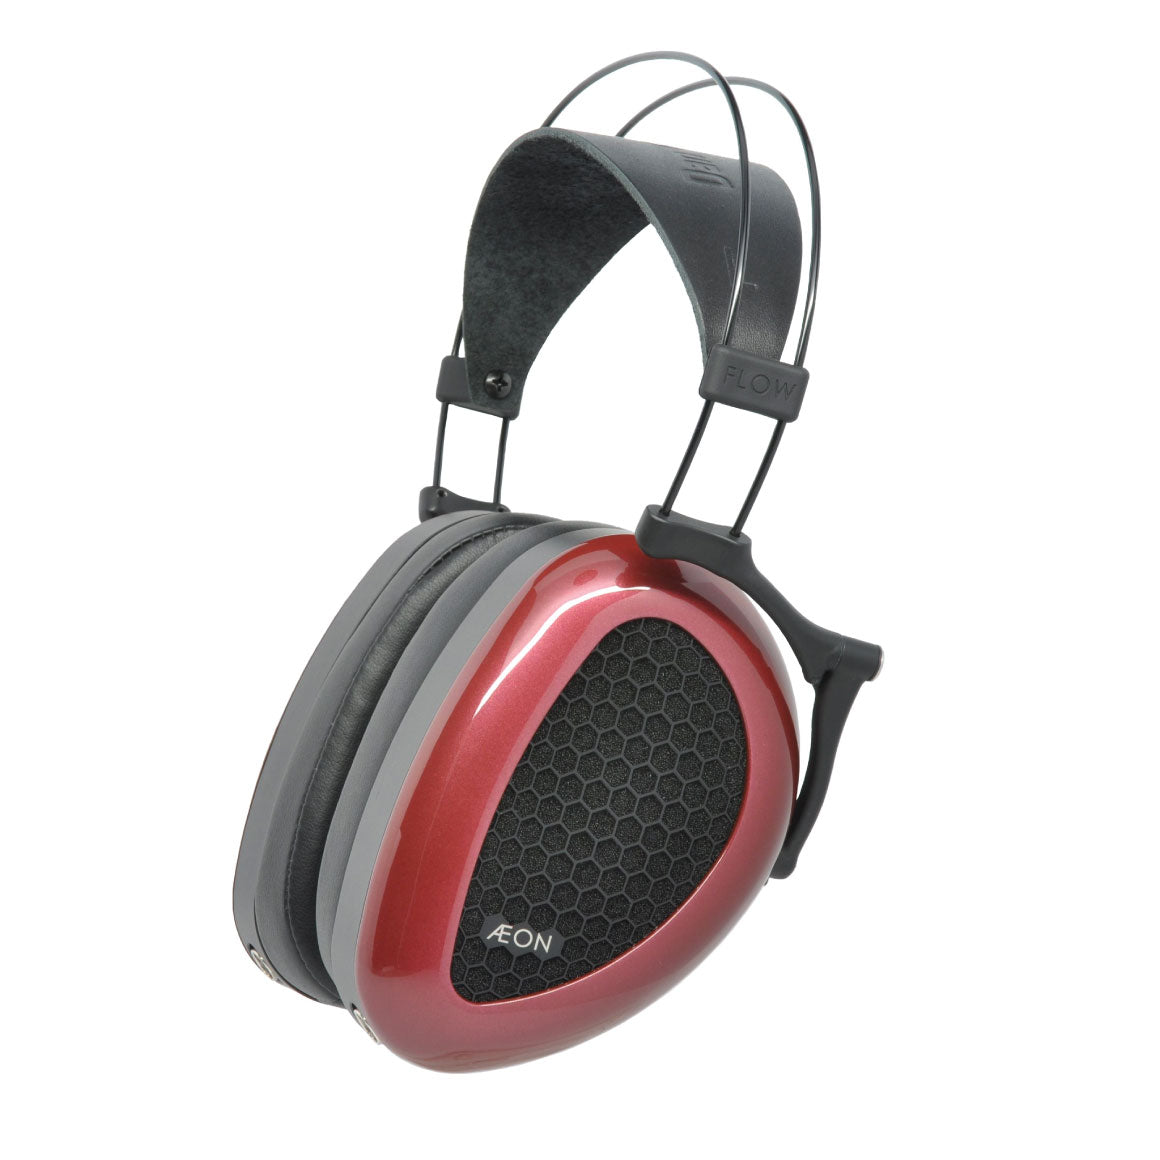 Headphone-Zone-Dan Clark Audio-AEON 2 Open-1/4 and 3.5mm tip